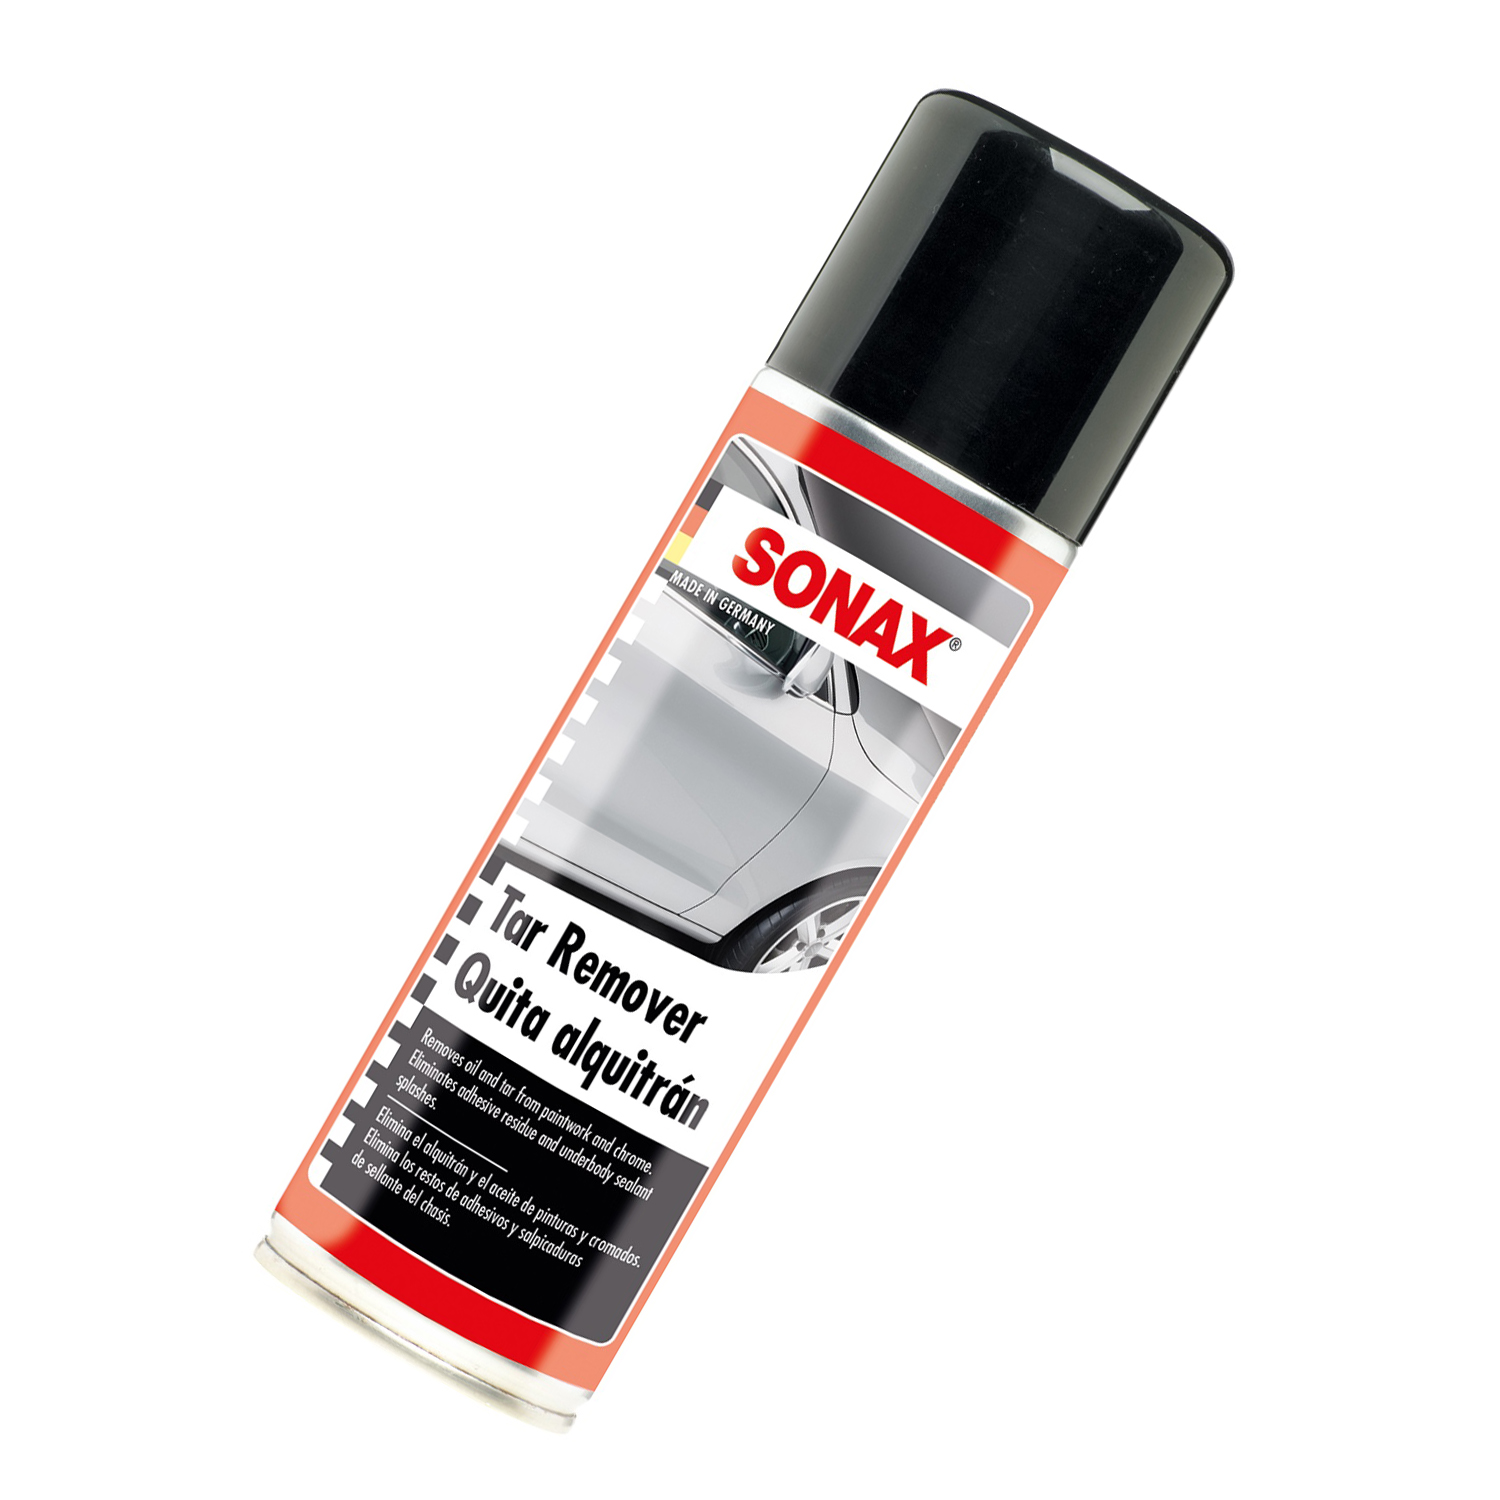 Dung dịch tẩy keo nhựa đường chuyên dụng Sonax 334200 300ml - Không hại sơn, tẩy sạch vết keo, nhựa trên sơn xe hoặc crôm